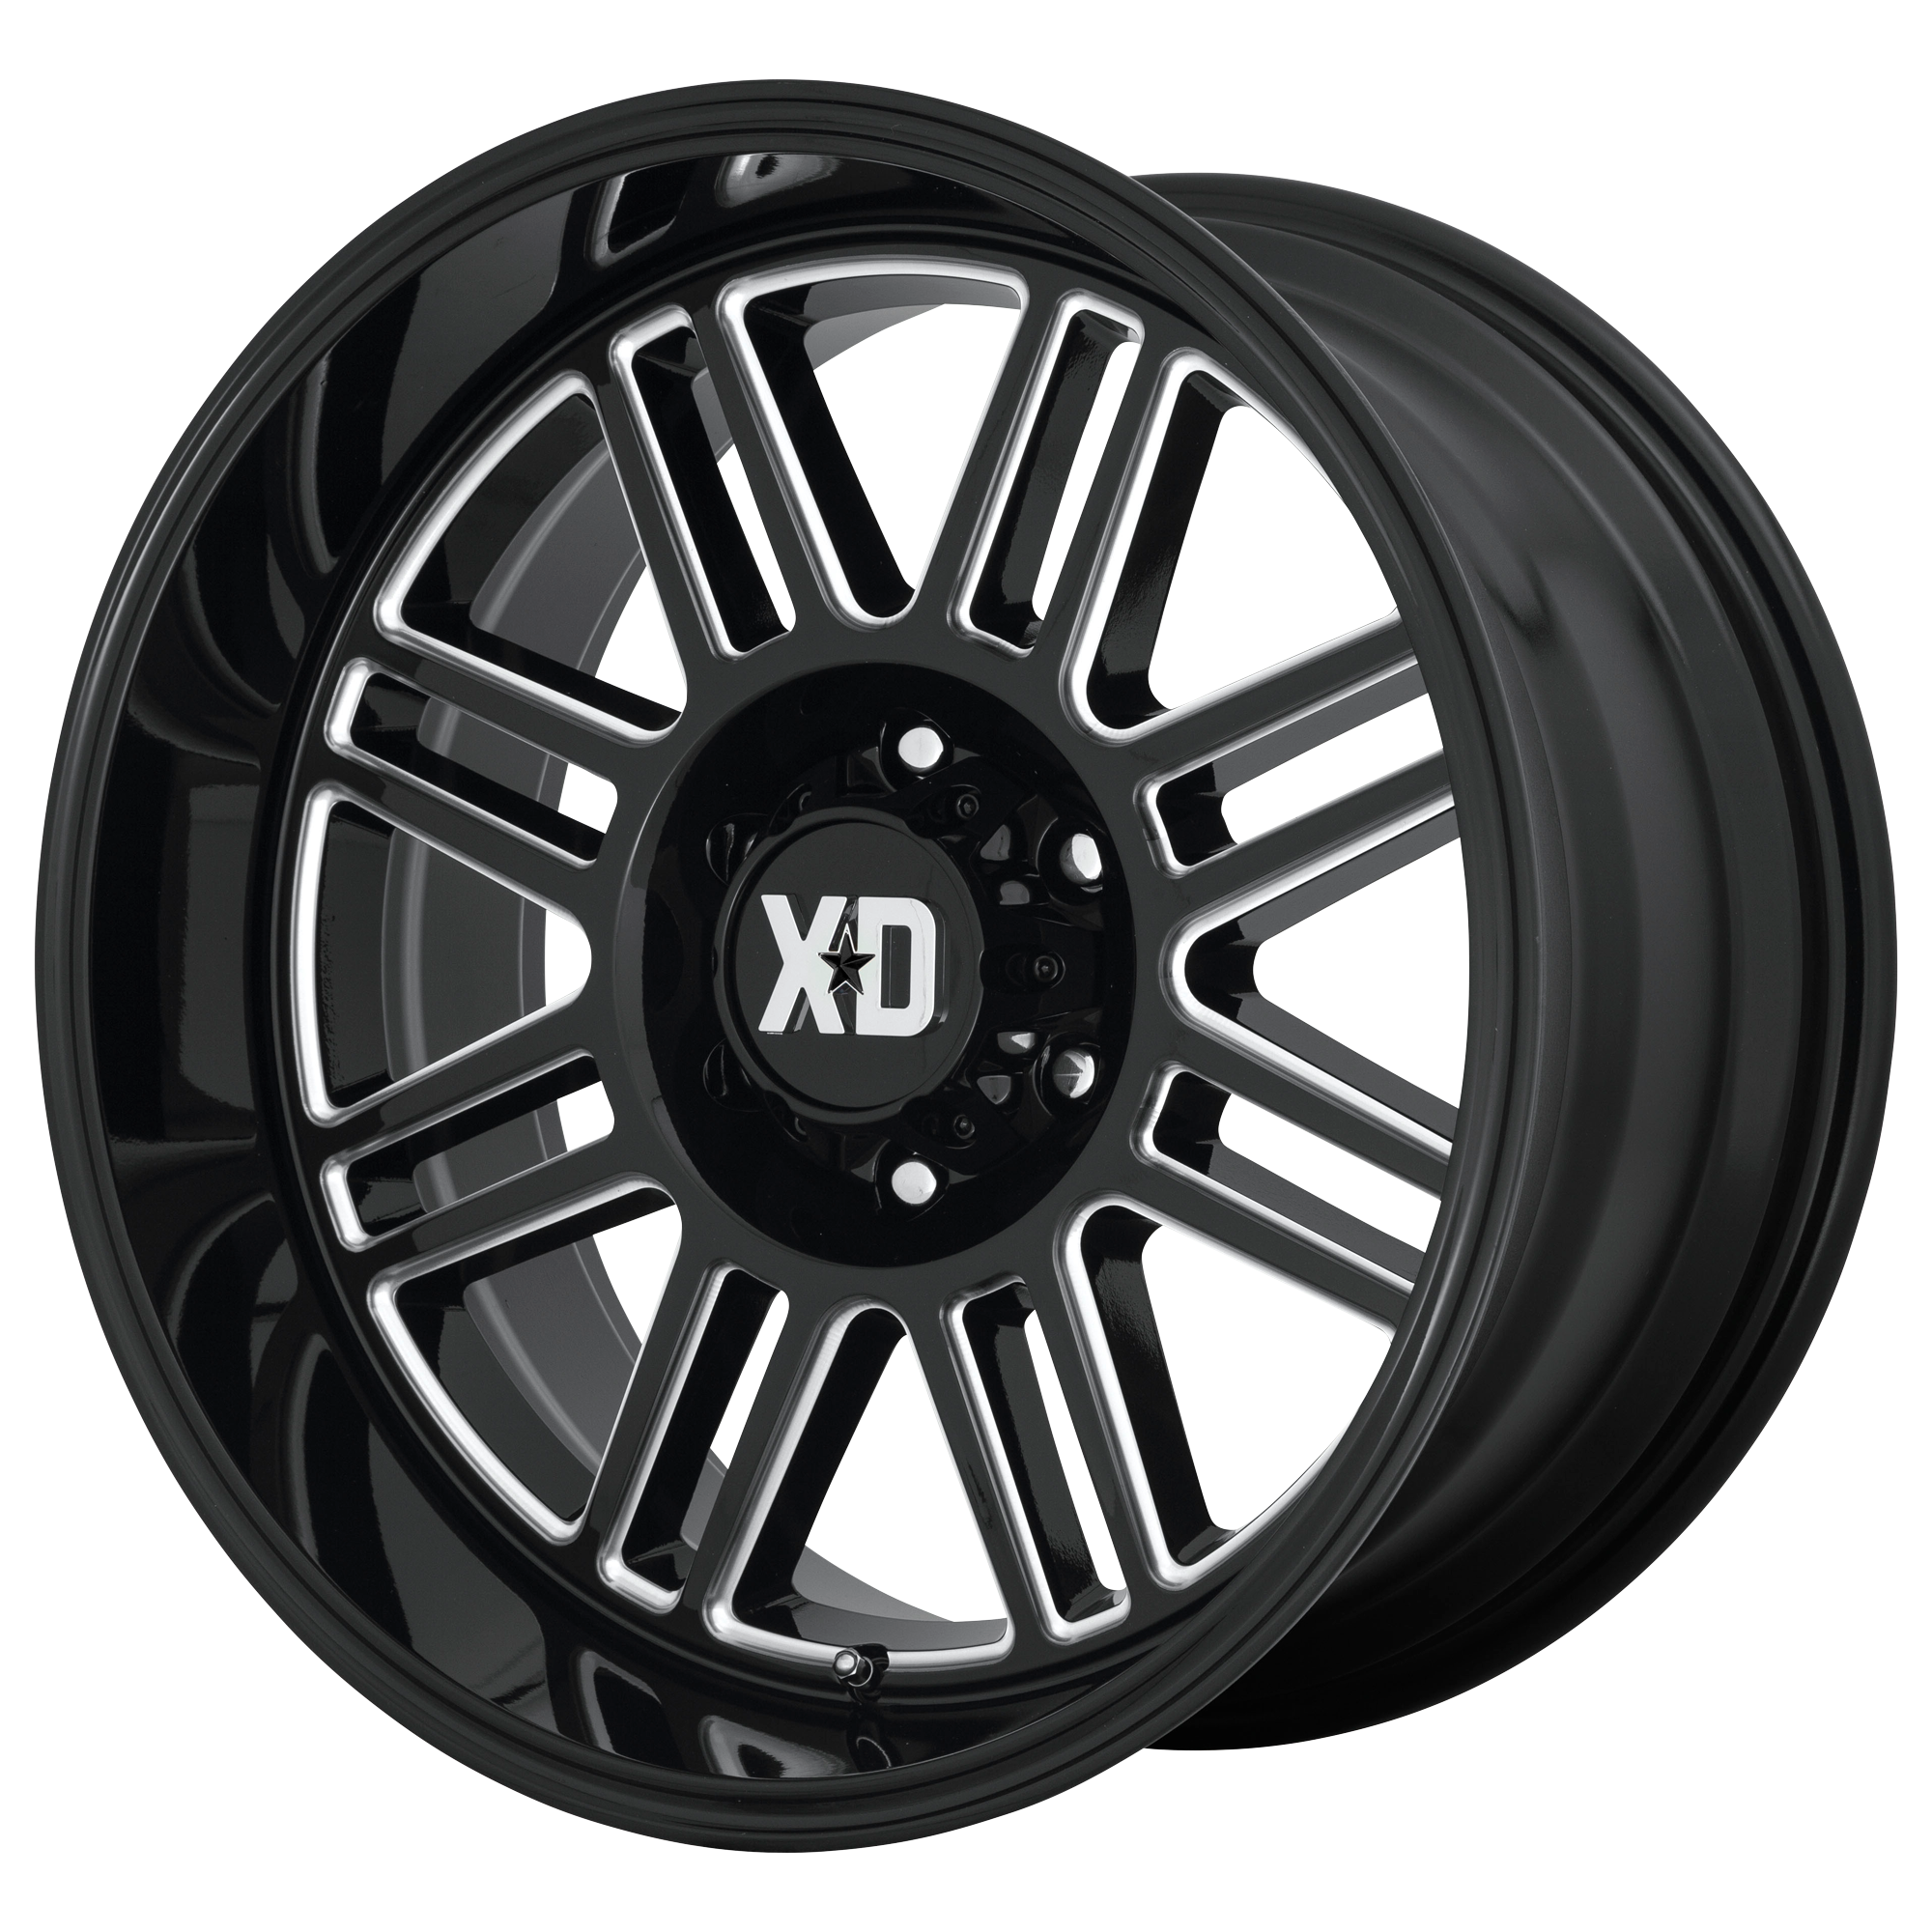 XD 22"x10" Non-Chrome Gloss Black Milled Custom Wheel ARSWCWXD85022050318N